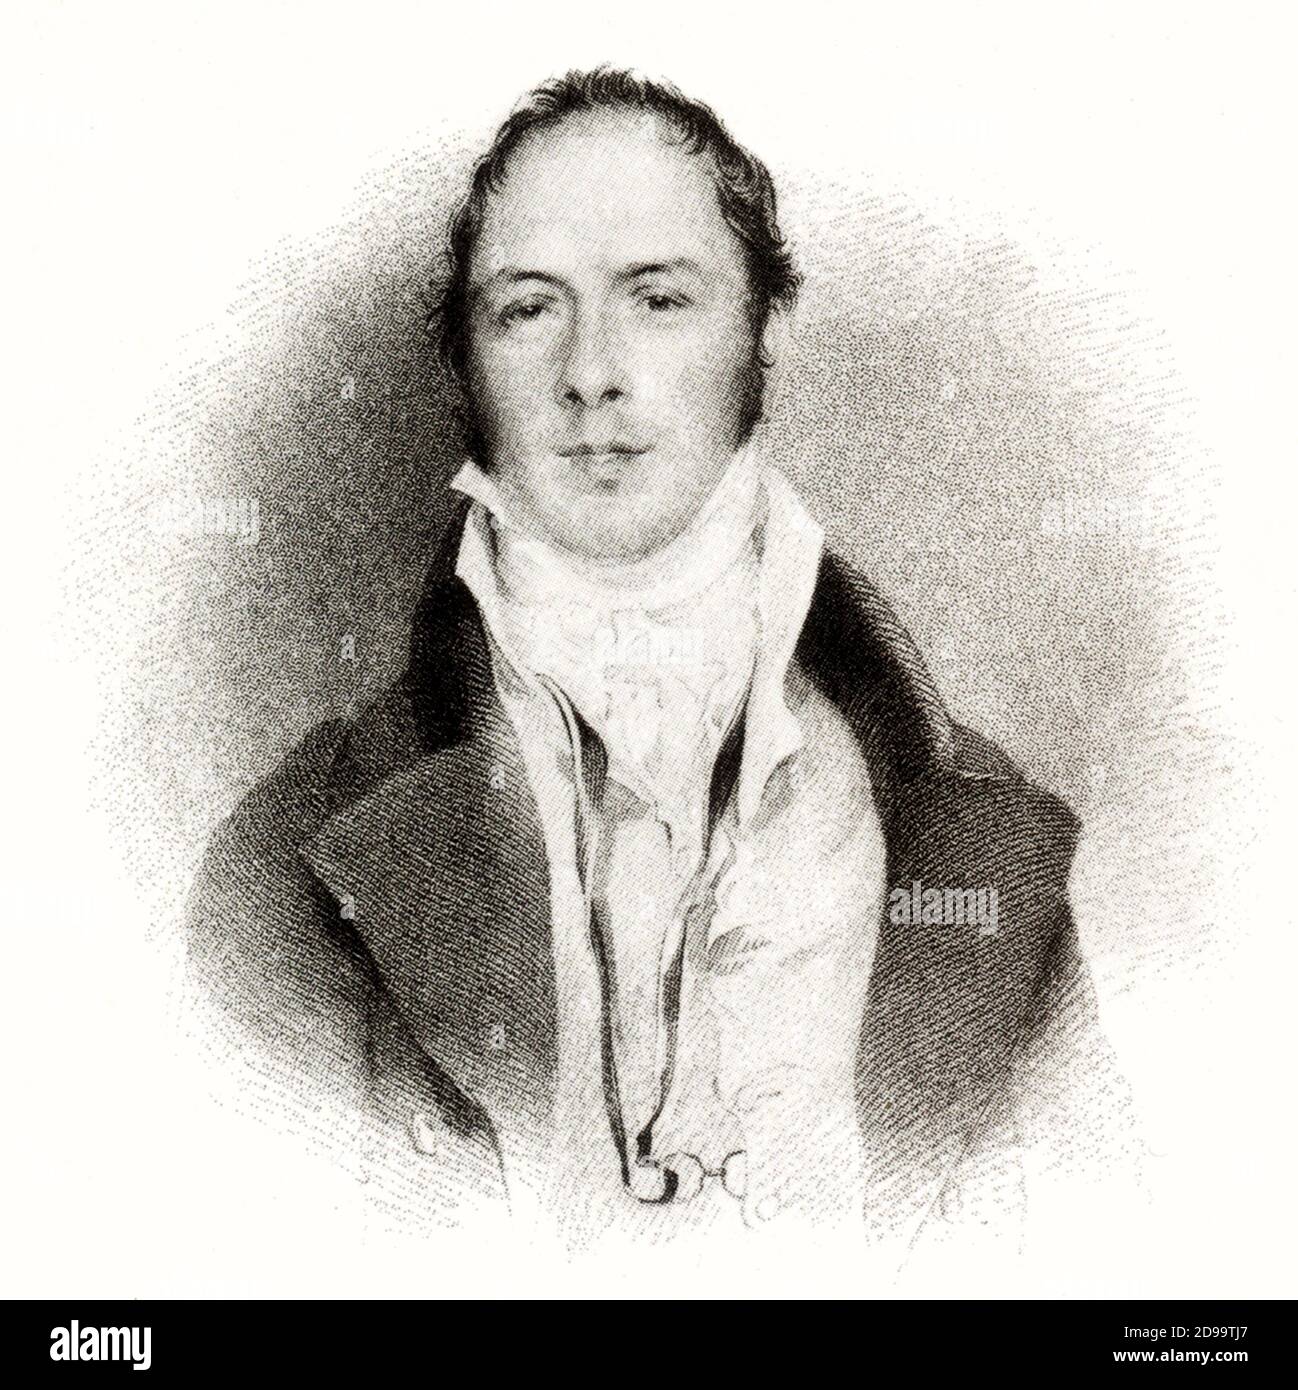 Lo scrittore inglese Matthew Gregory LEWIS ( 1775 - 1818 ) , autore di un romano gotico ' il Mistico ' ( 1796 ) , invadendo da un ritratto di G. H. Harlowe ( 1834 ) - SCRITTORE - LETTERATURA - letteratura - letterato - ritratto - gotico - horror - vampiro - vampiri - triller - colletto - colletto - occhiali pince-nez - pince nez - bicchieri ---- Archivio GBB Foto Stock